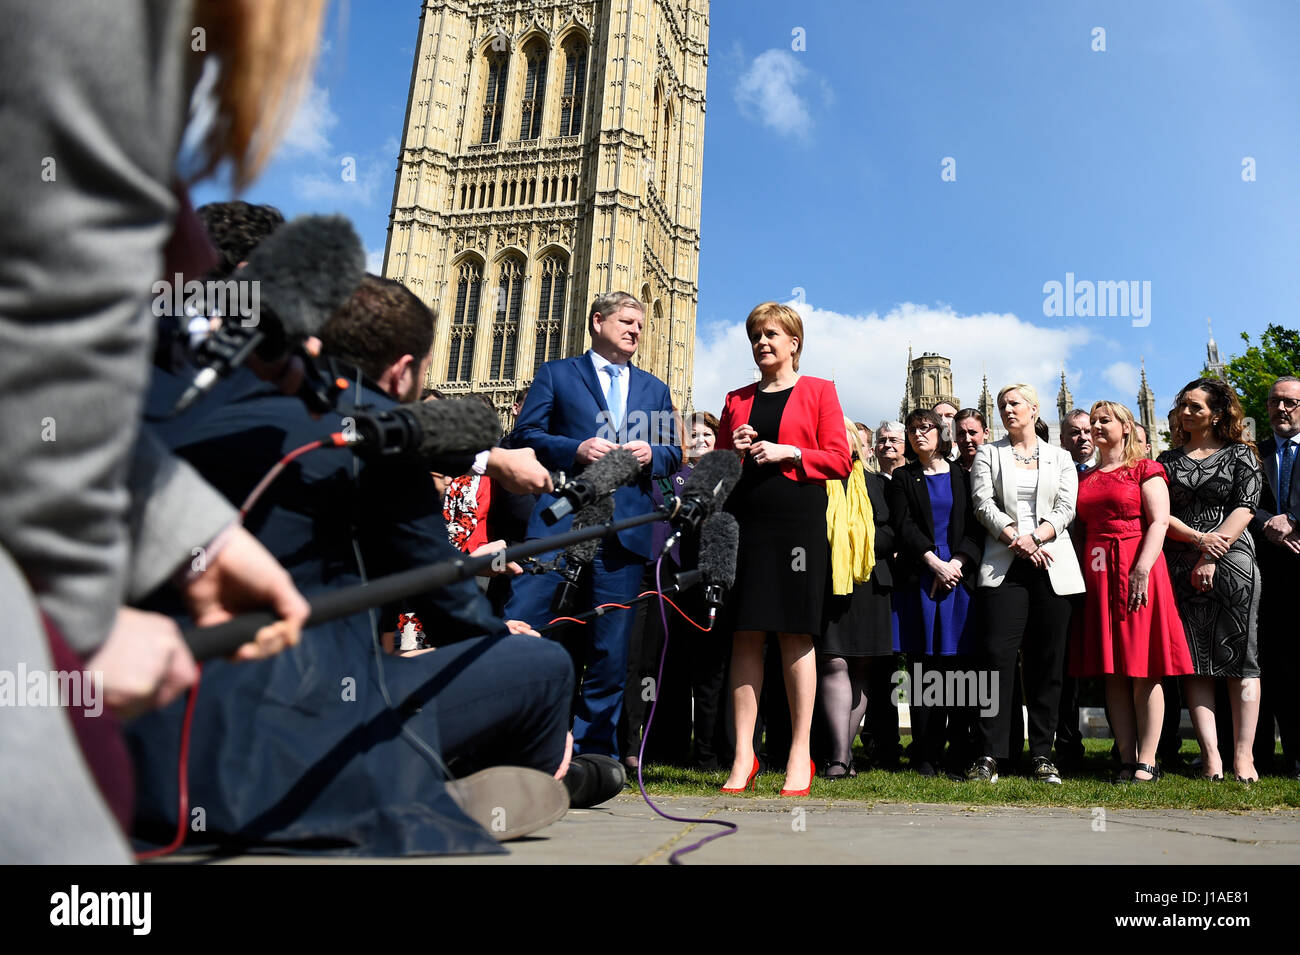 Londres, Royaume-Uni. Apr 19, 2017. Parti national écossais (SNP) leader et premier ministre écossais Nicola Sturgeon (R, parle à l'extérieur de l'avant) chambres du Parlement avec le sous-chef SNP Angus Robertson à Londres, Royaume-Uni, le 19 avril 2017. Les membres du Parlement à la Chambre des communes ont-ils soutenu mercredi au premier ministre Theresa May's appel à une élection générale le 8 juin. Crédit : Tim Irlande/Xinhua/Alamy Live News Banque D'Images